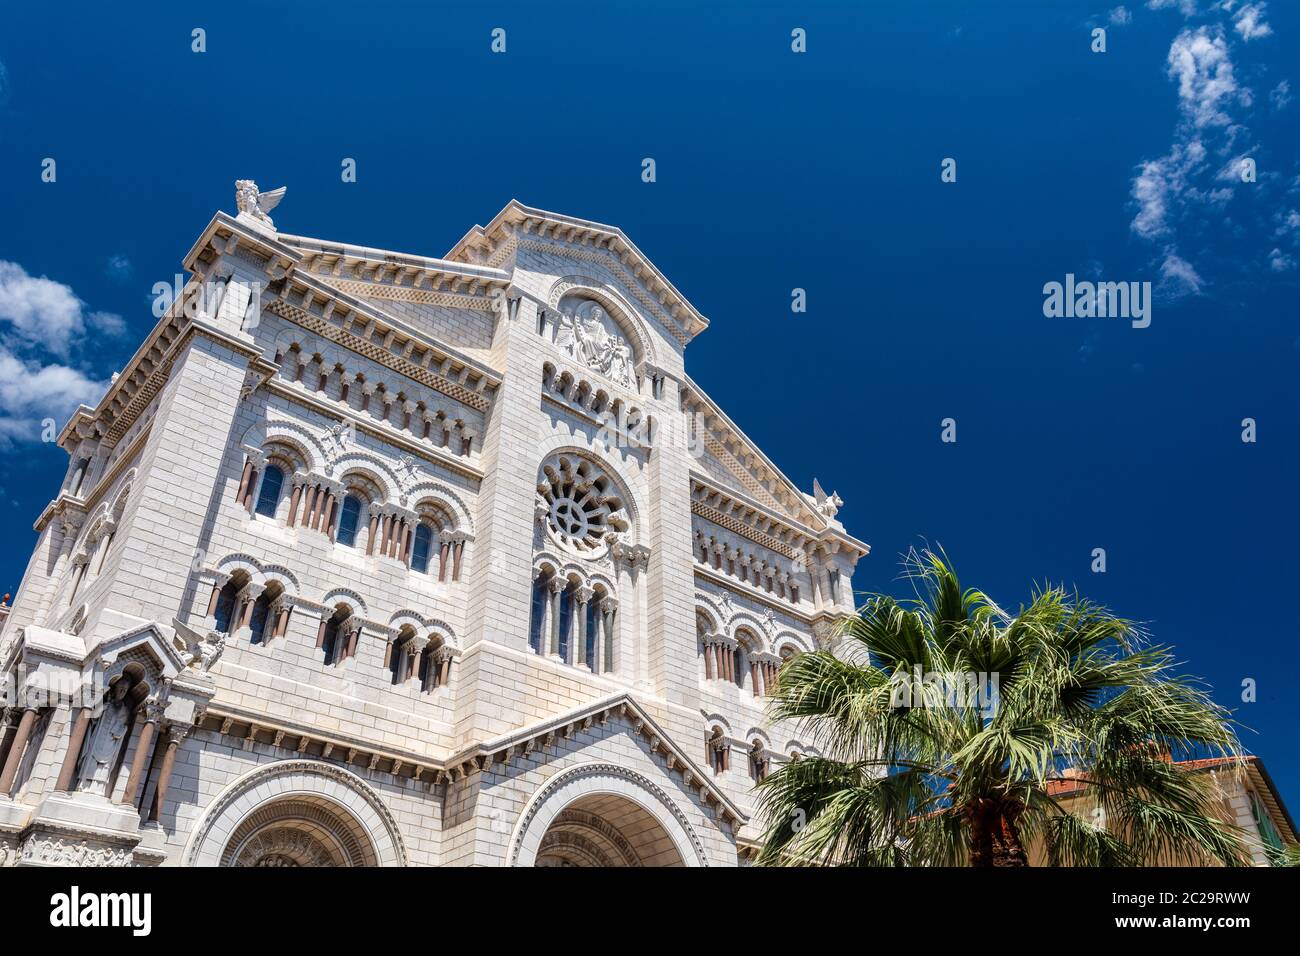 Esterno della Cattedrale di Monaco (Cattedrale di Monaco) a Monaco-Ville, Monaco. E' famoso per le tombe della Principessa Grace e del Principe Rainier. Foto Stock